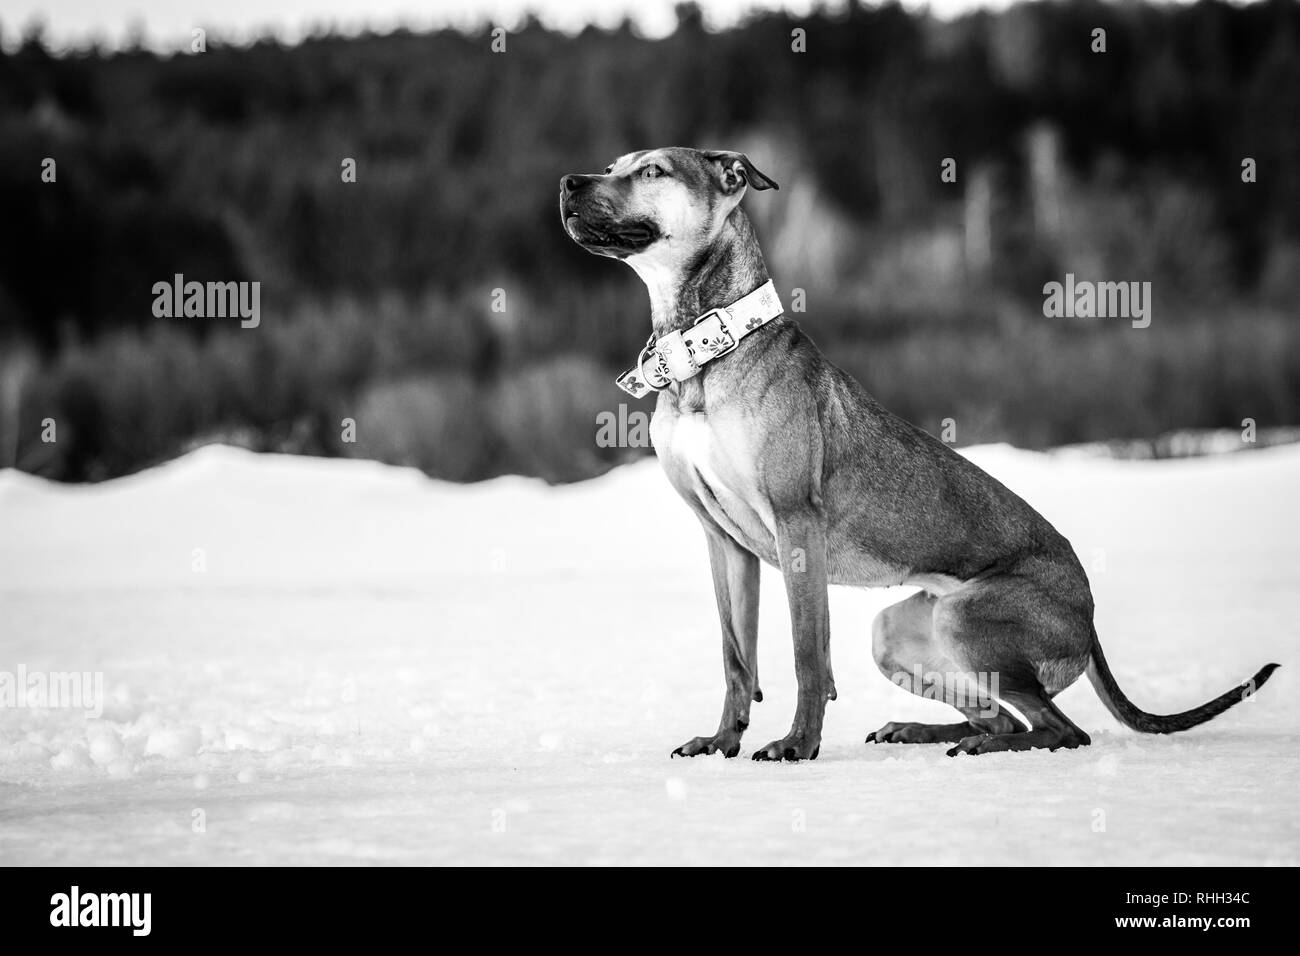 Noir blanc photographie d'une jeune femelle bull-terrier américain de mine chien assis dans la neige Banque D'Images